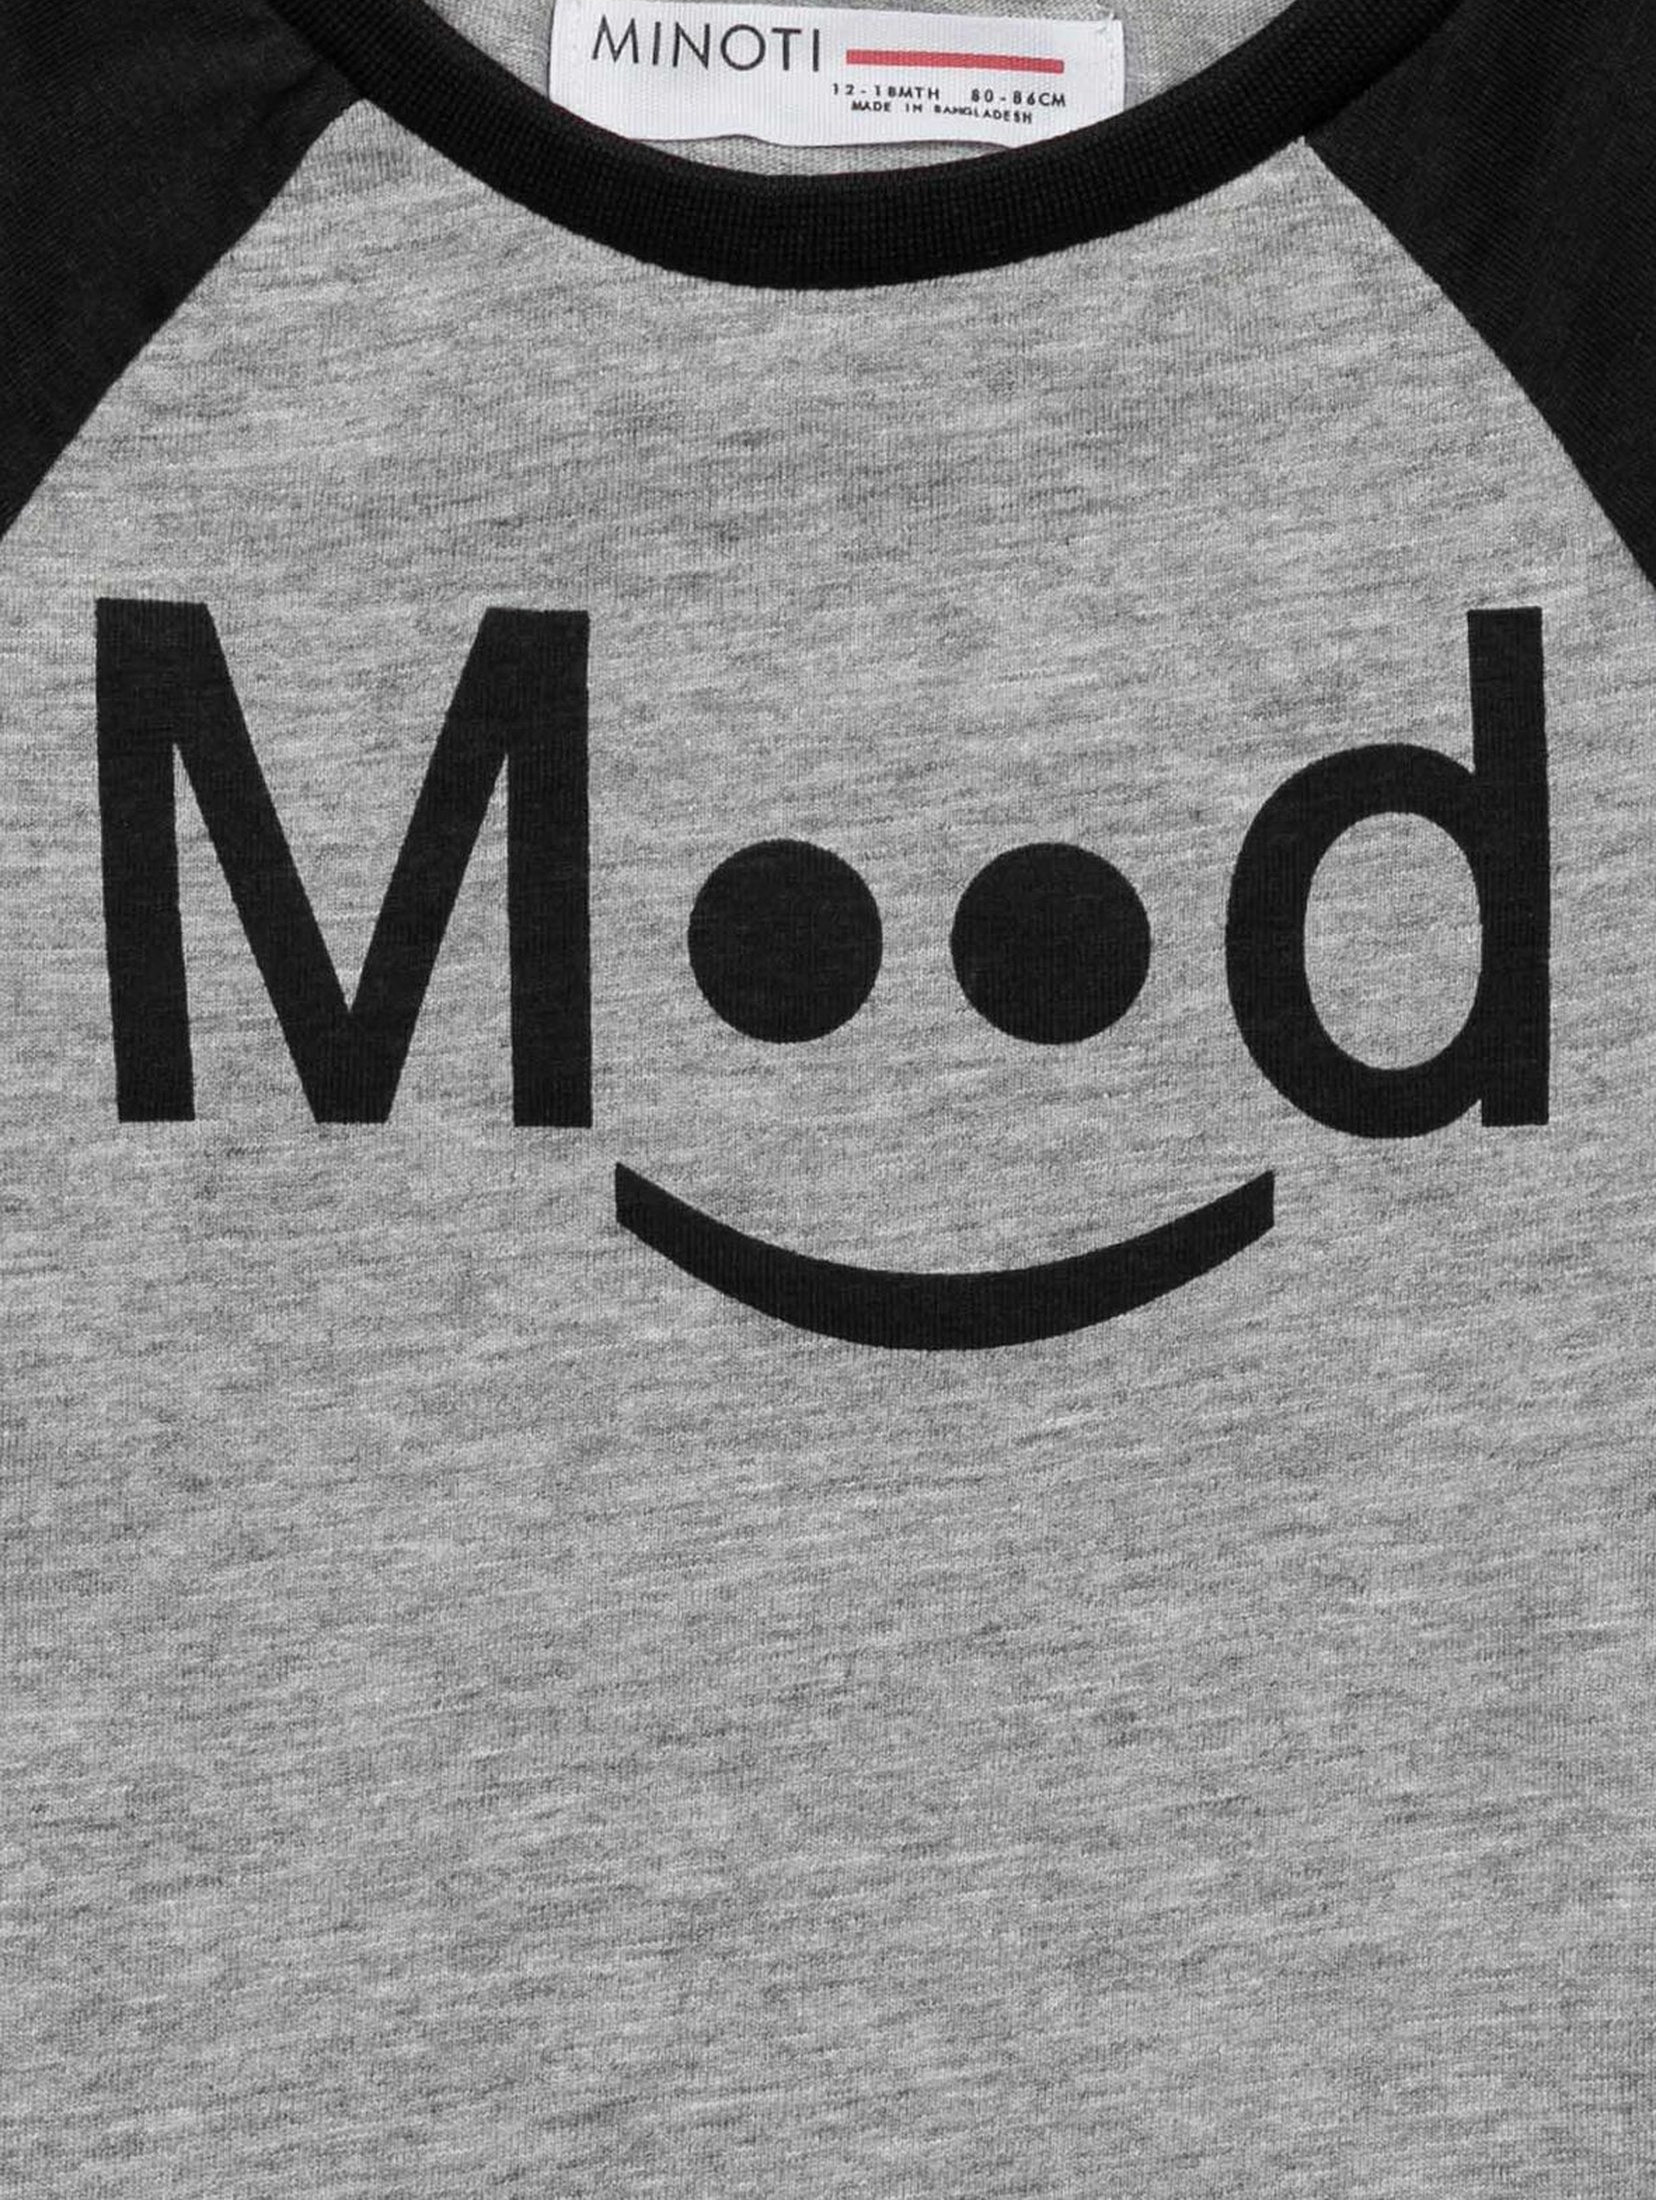 T-shirt niemowlęcy szary Mood